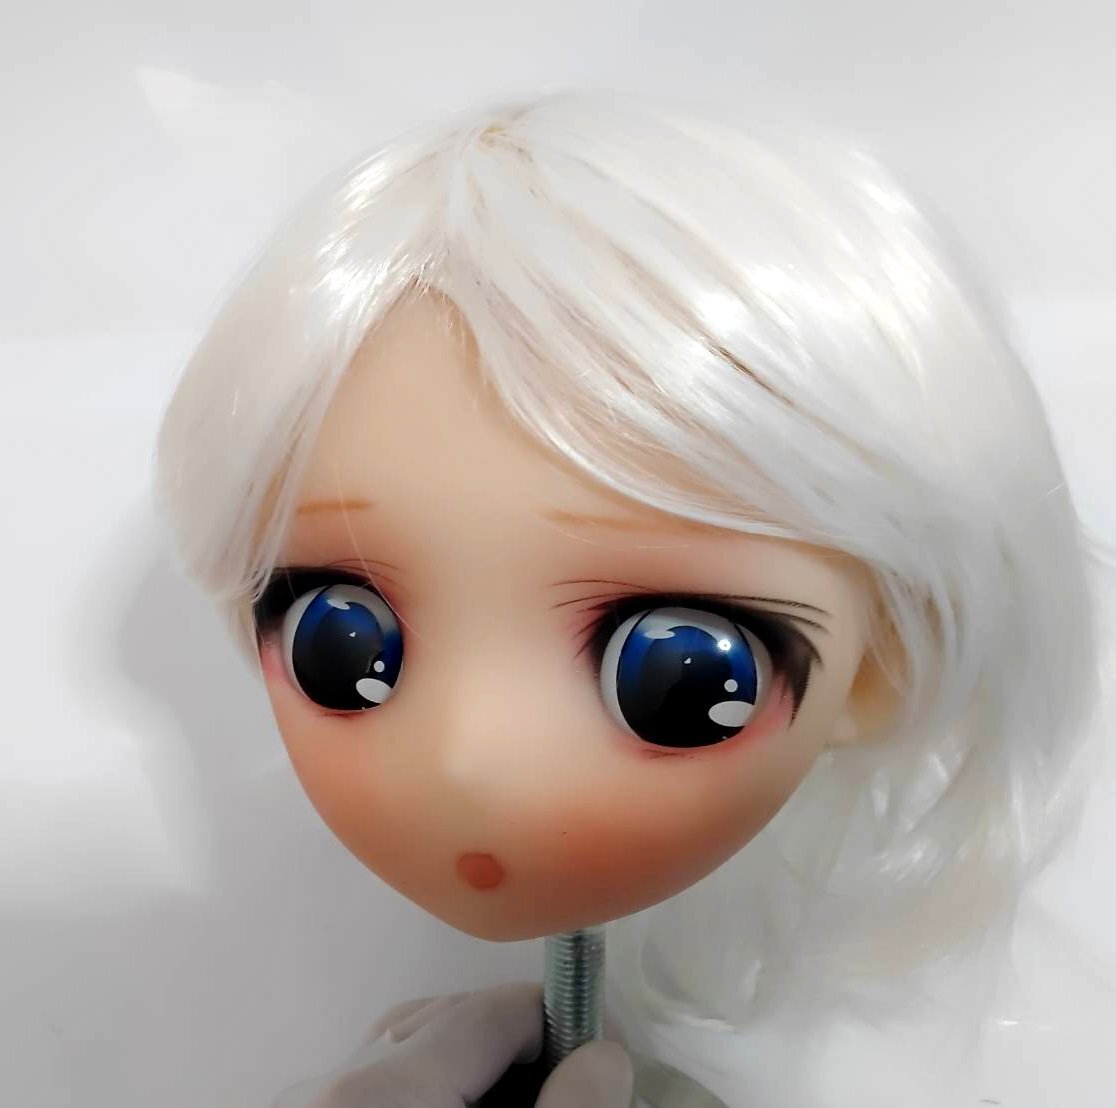 Anime 2D tête de poupée 2D poupée personnalisée poupée réelle poupée grandeur nature perruque mannequin tête livraison gratuite dans tout le pays, poupée, poupée de personnage, poupée personnalisée, les pièces